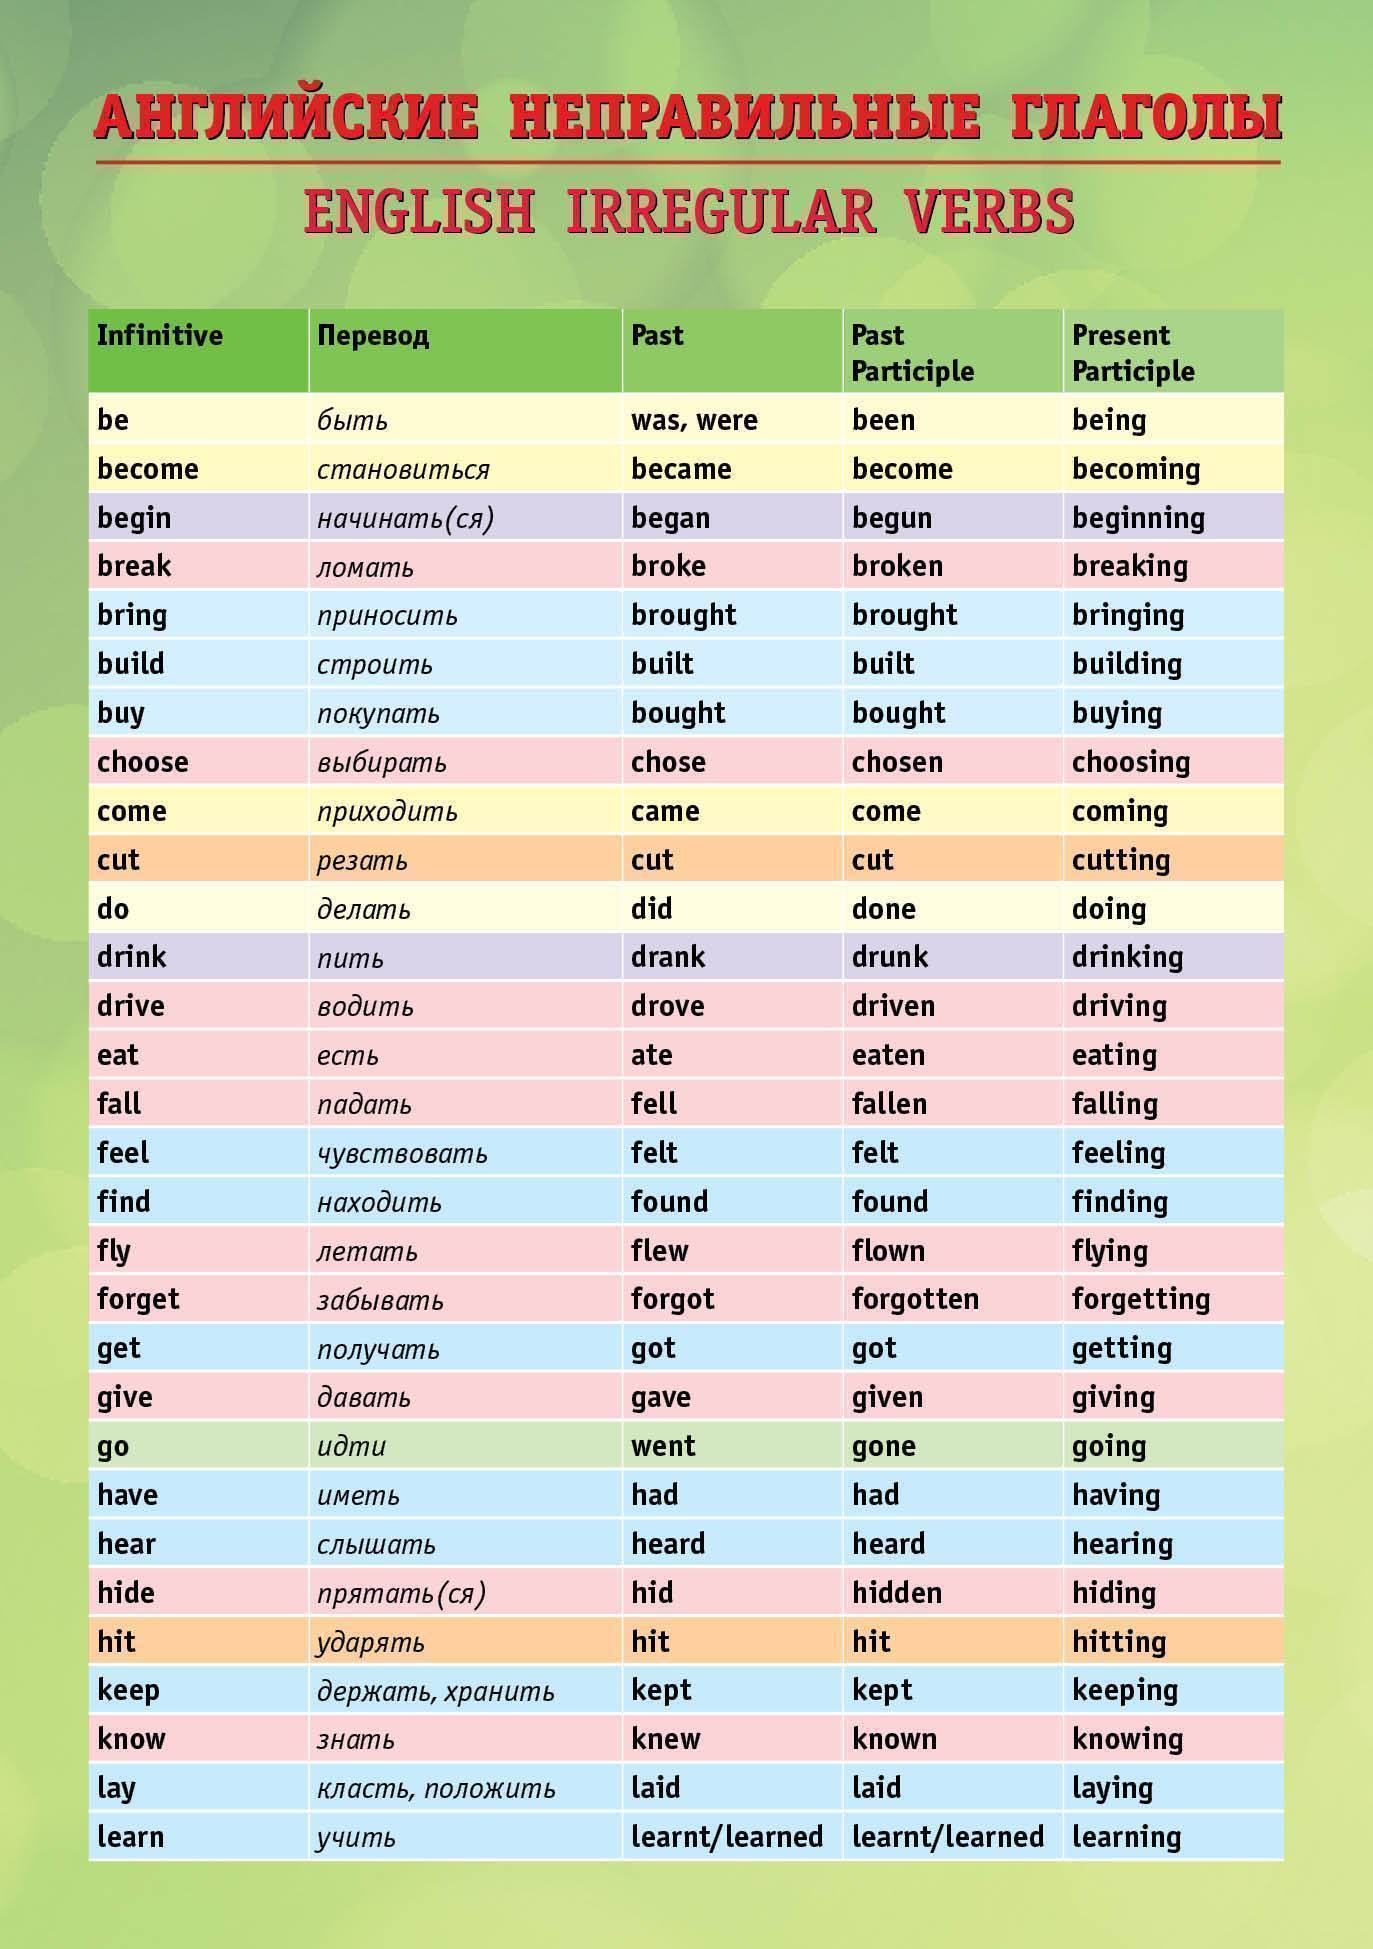 Формы неправильных глаголов в английском языке таблица